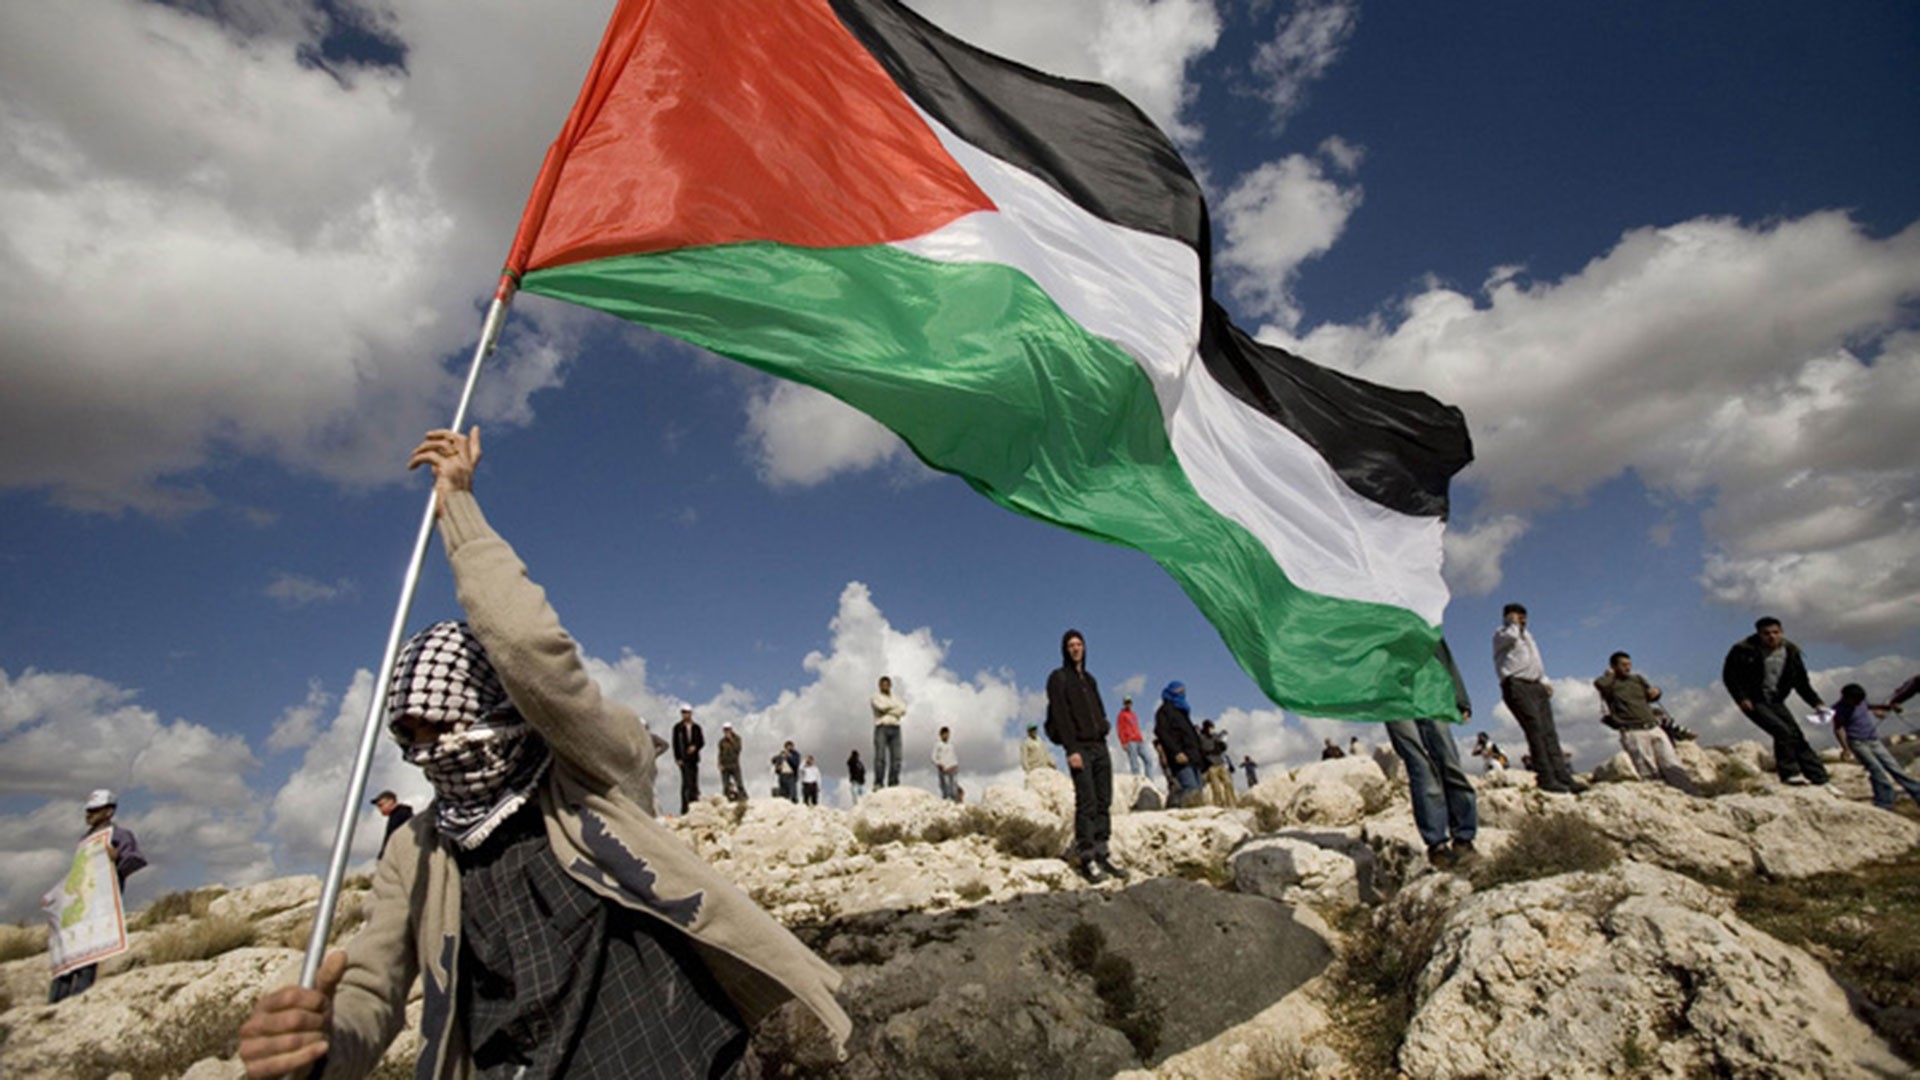  "استشهاد 4 فلسطينيين" خلال اشتباكات على الحدود بين غزة وإسرائيل خلال مسيرات العودة 